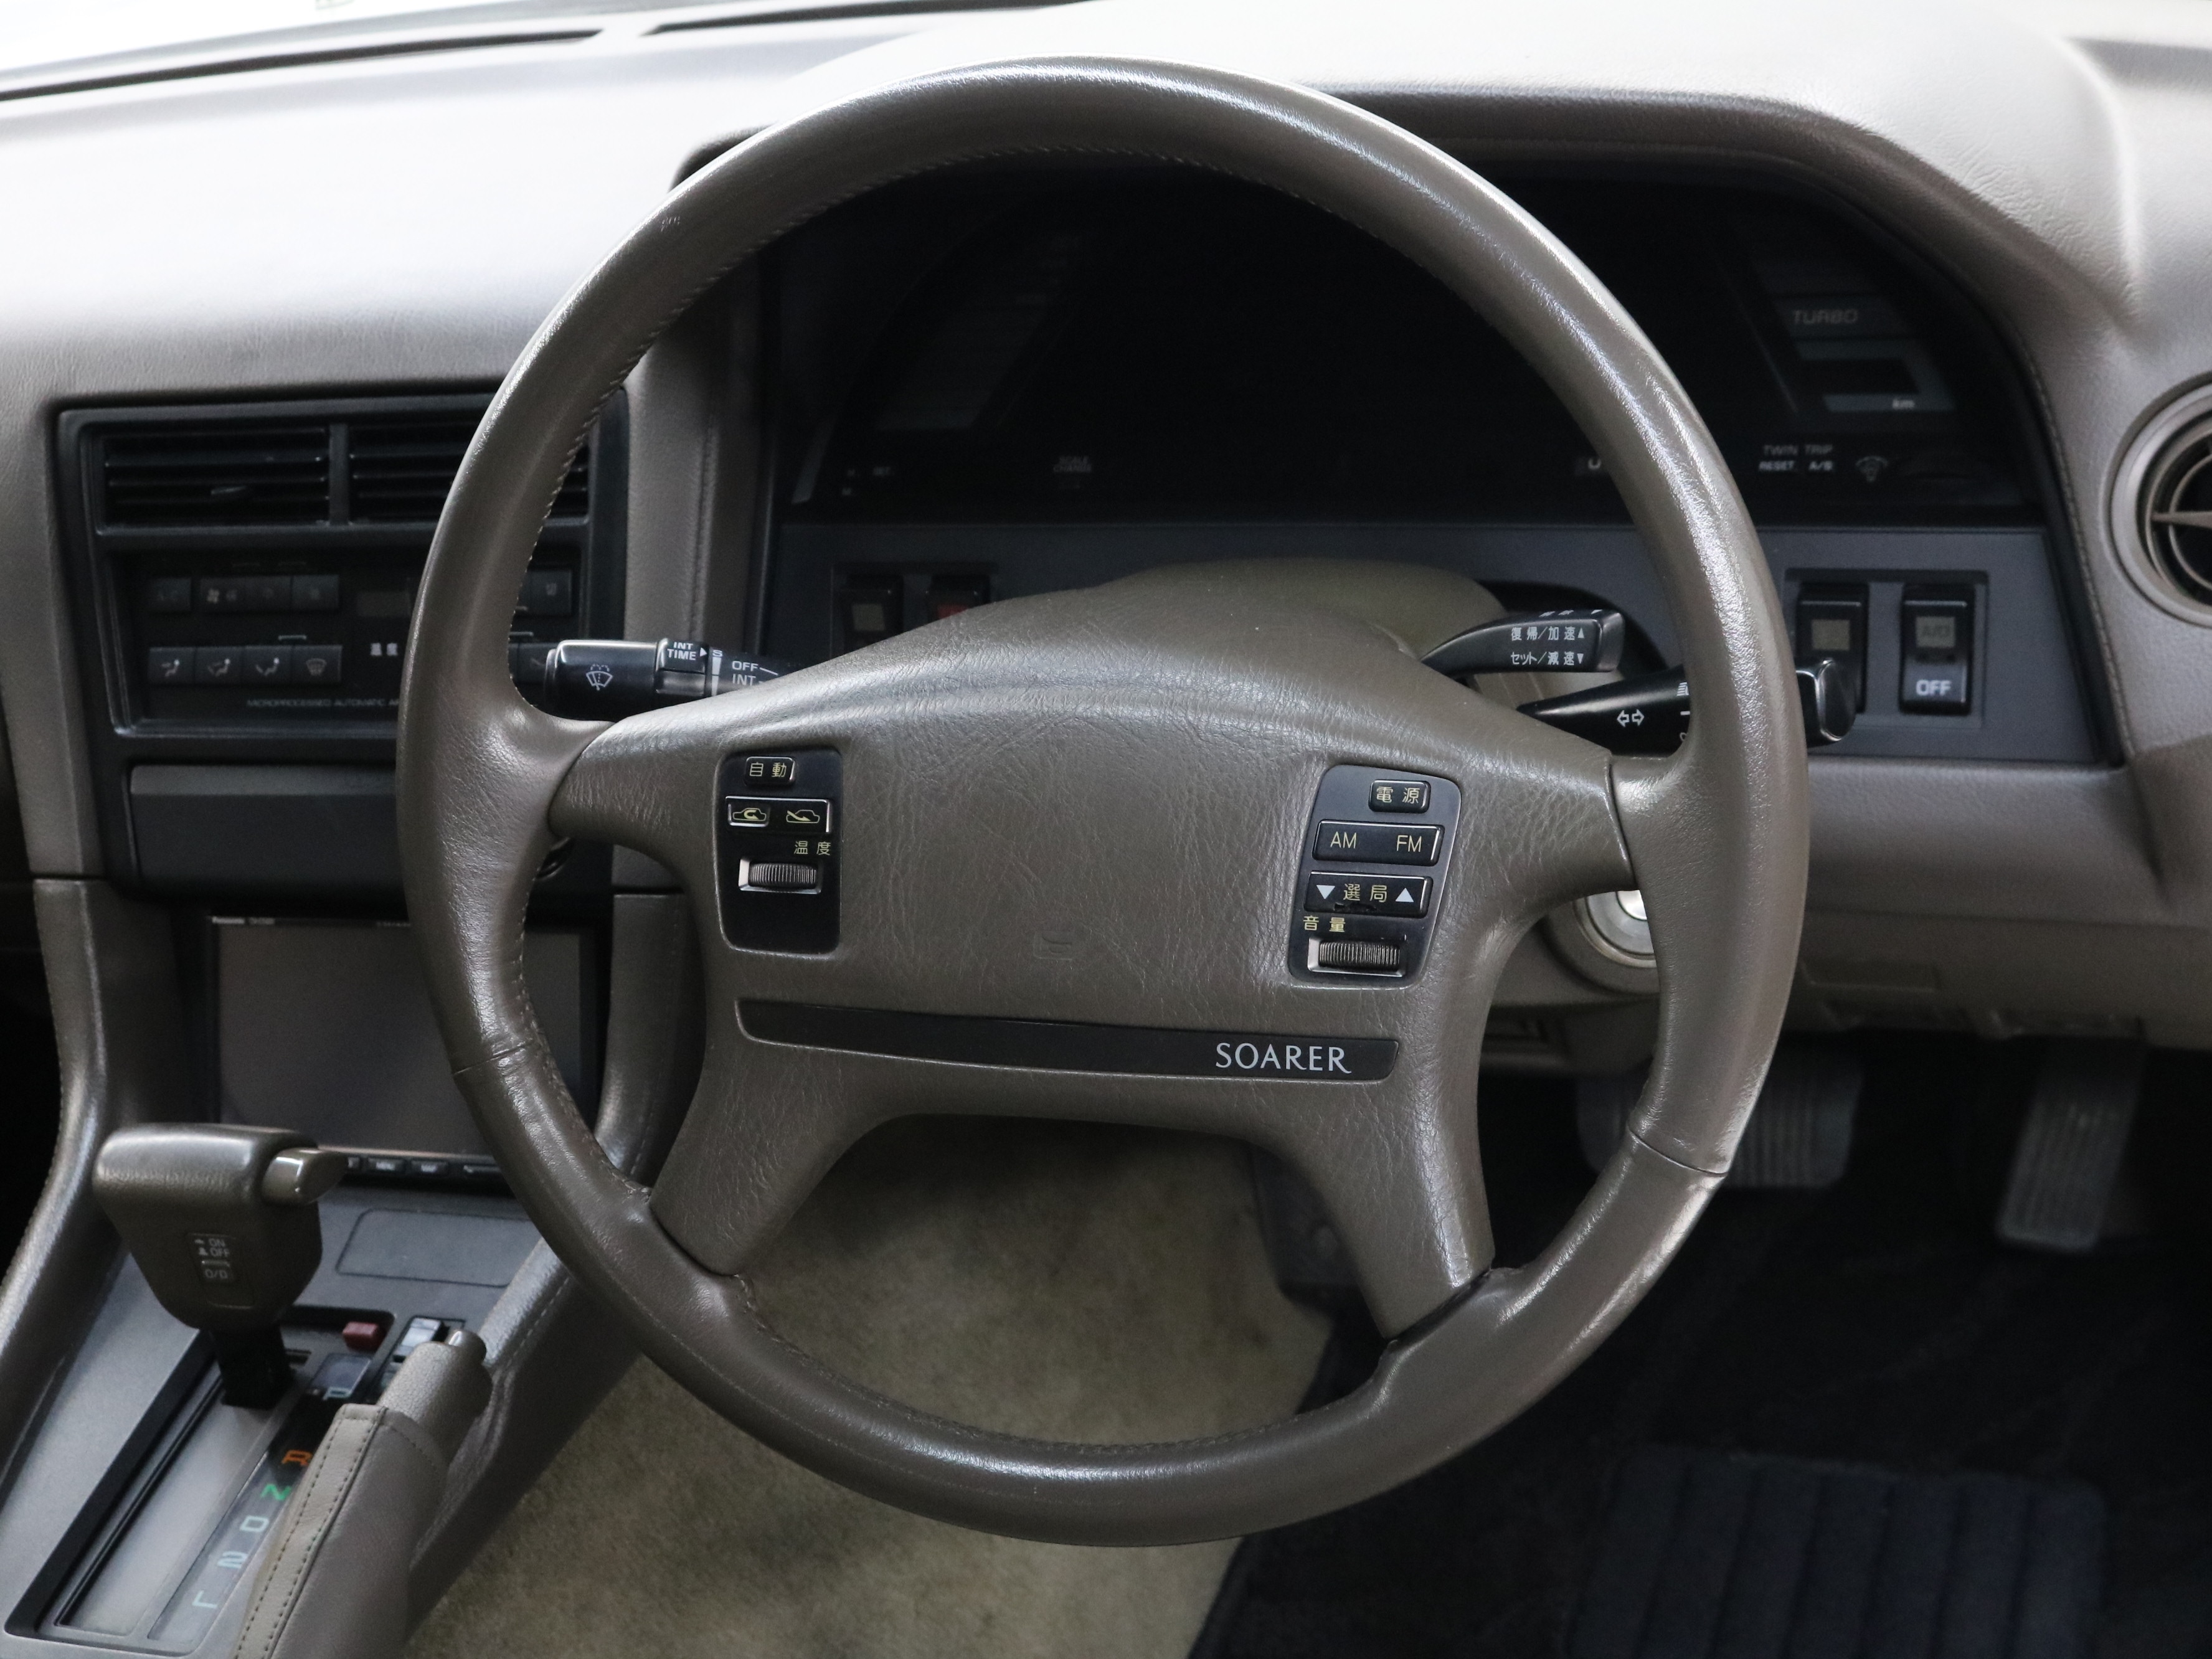 1989 Toyota Soarer 40